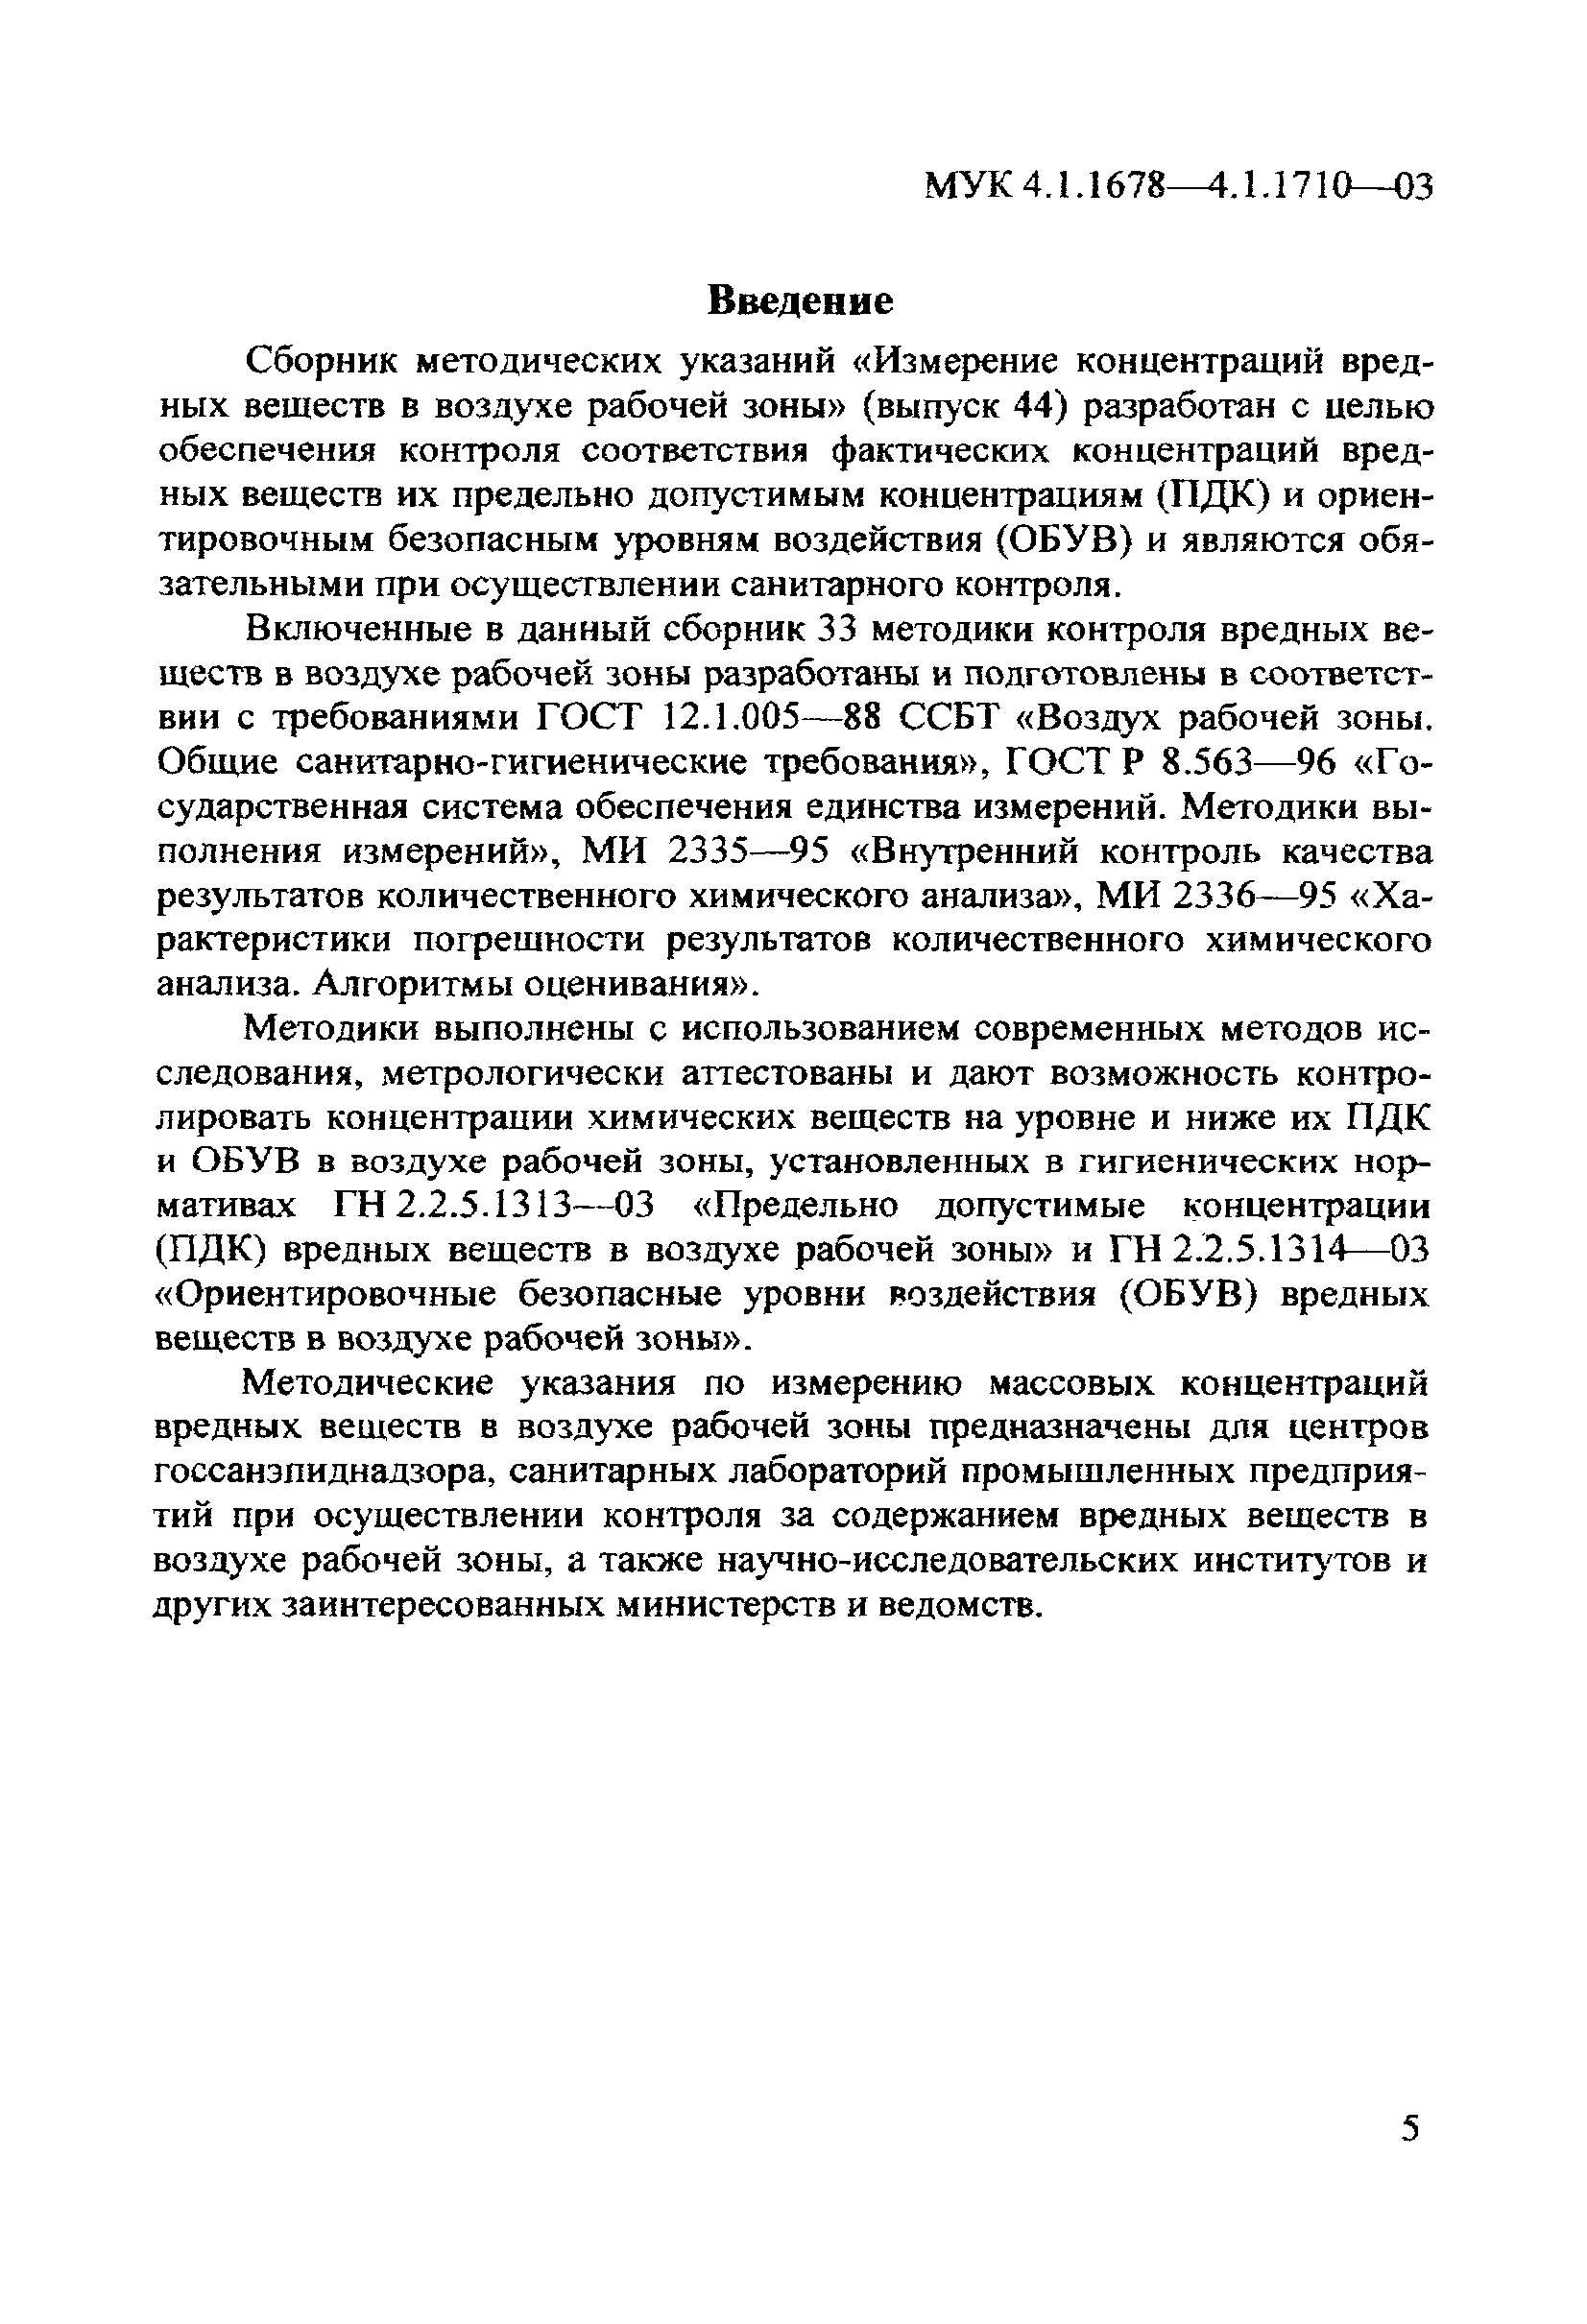 МУК 4.1.1699-03